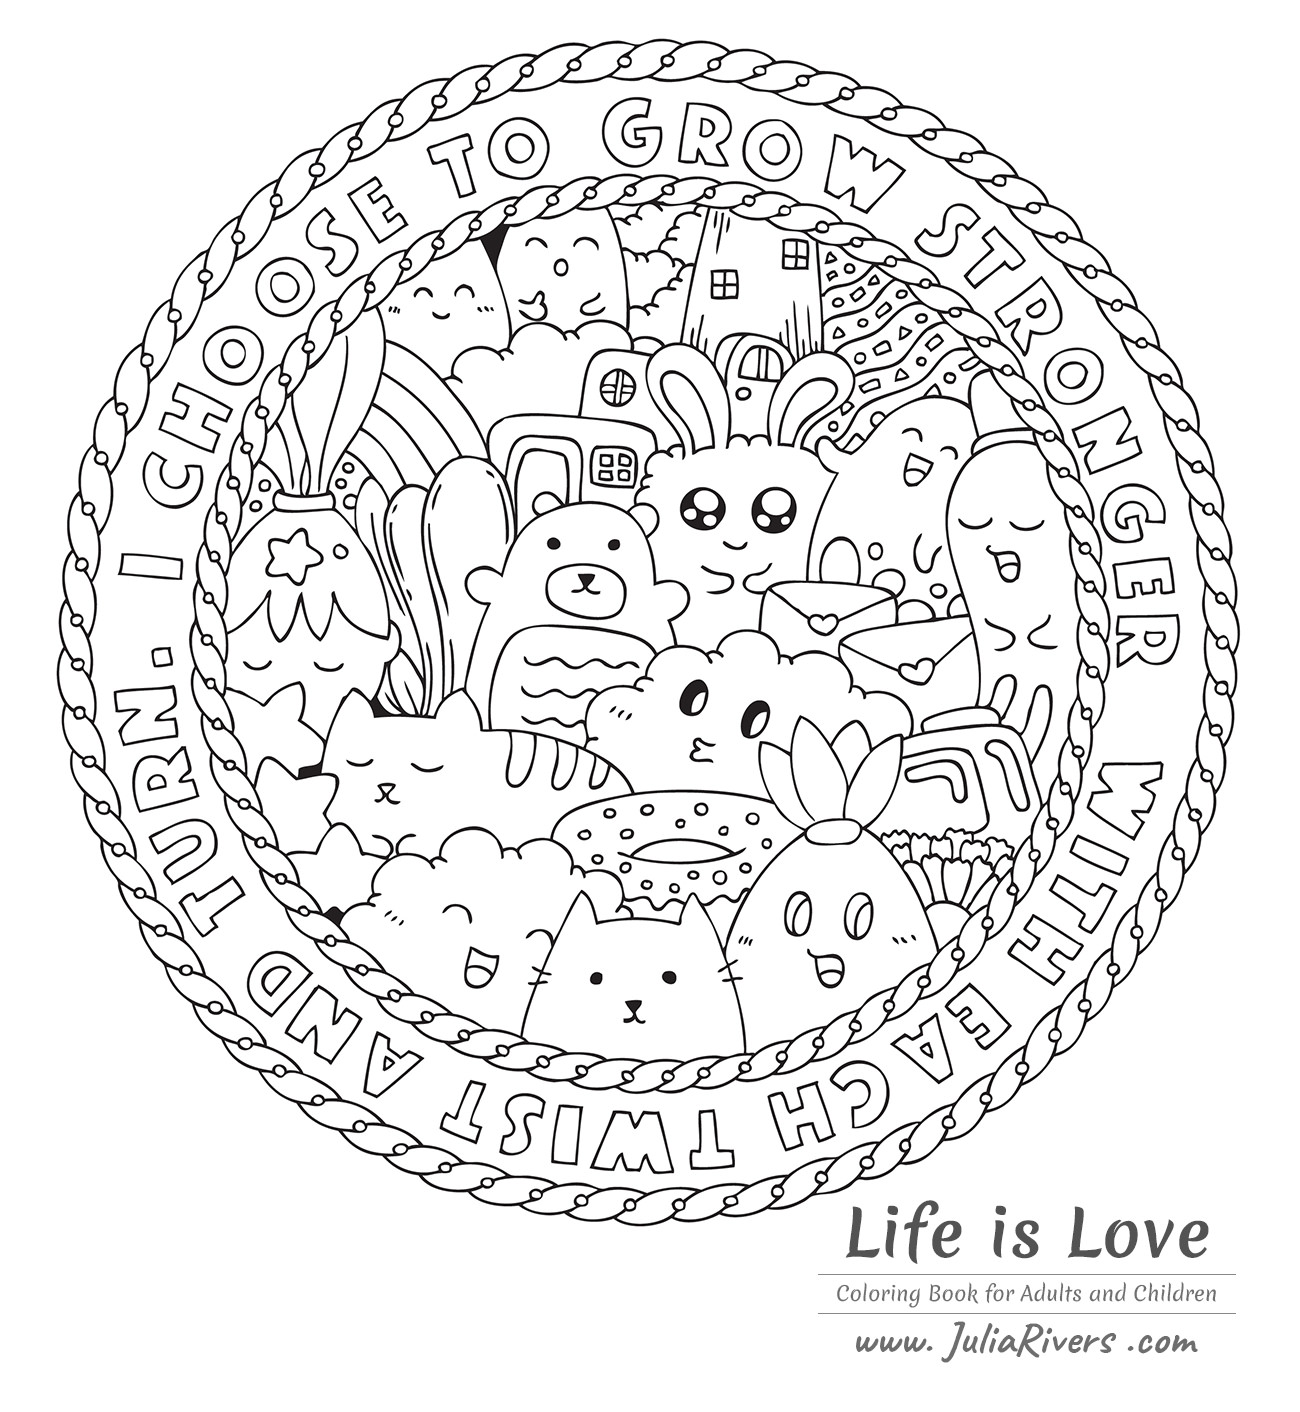 'Doodle L'amour c'est la vie': Magnífica coloração sob a forma de uma Mandala, com criaturas desenhadas em estilo Kawaii e até um Donut!, Artista : Julia Rivers